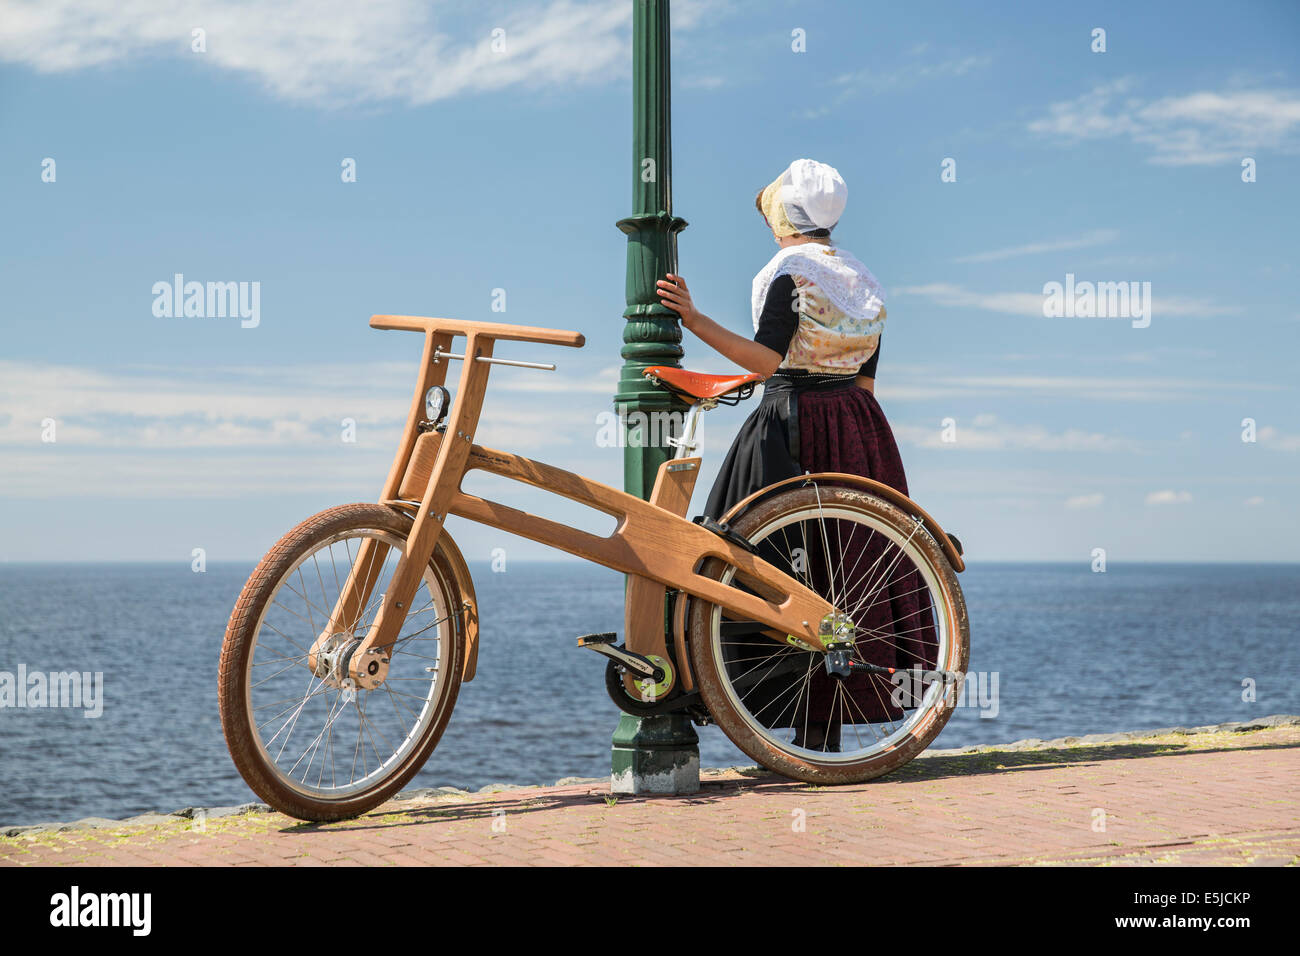 Pays-bas, Urk, rejeton vélo. Le Dutch Design vélo en bois est une création de Jan Gunneweg. Fille en robe du dimanche traditionnel Banque D'Images